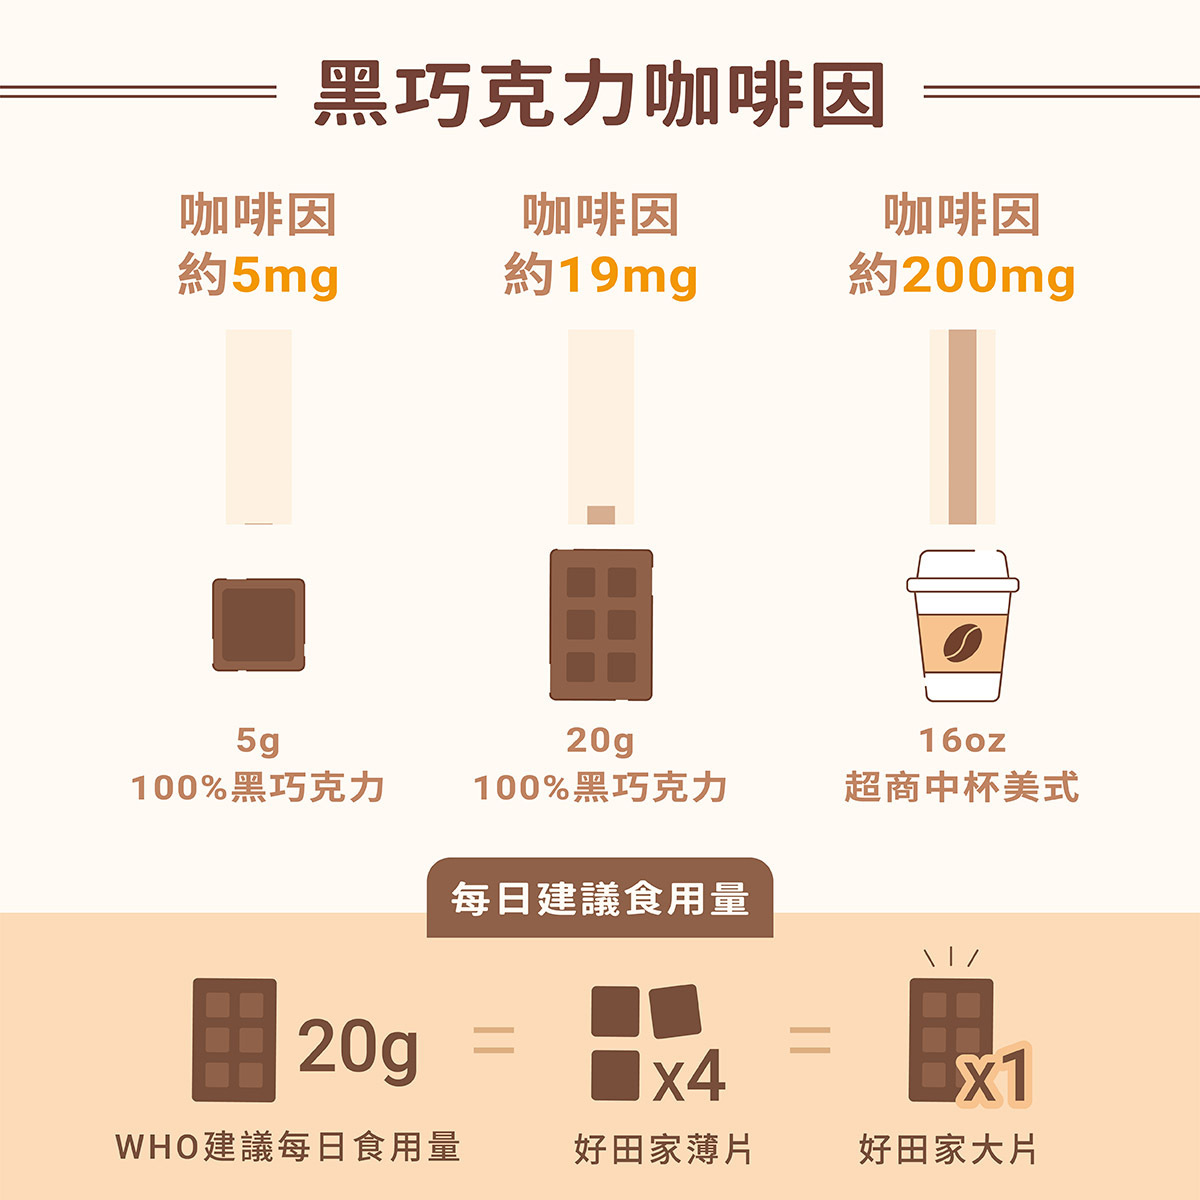 黑巧克力-咖啡-咖啡因比較